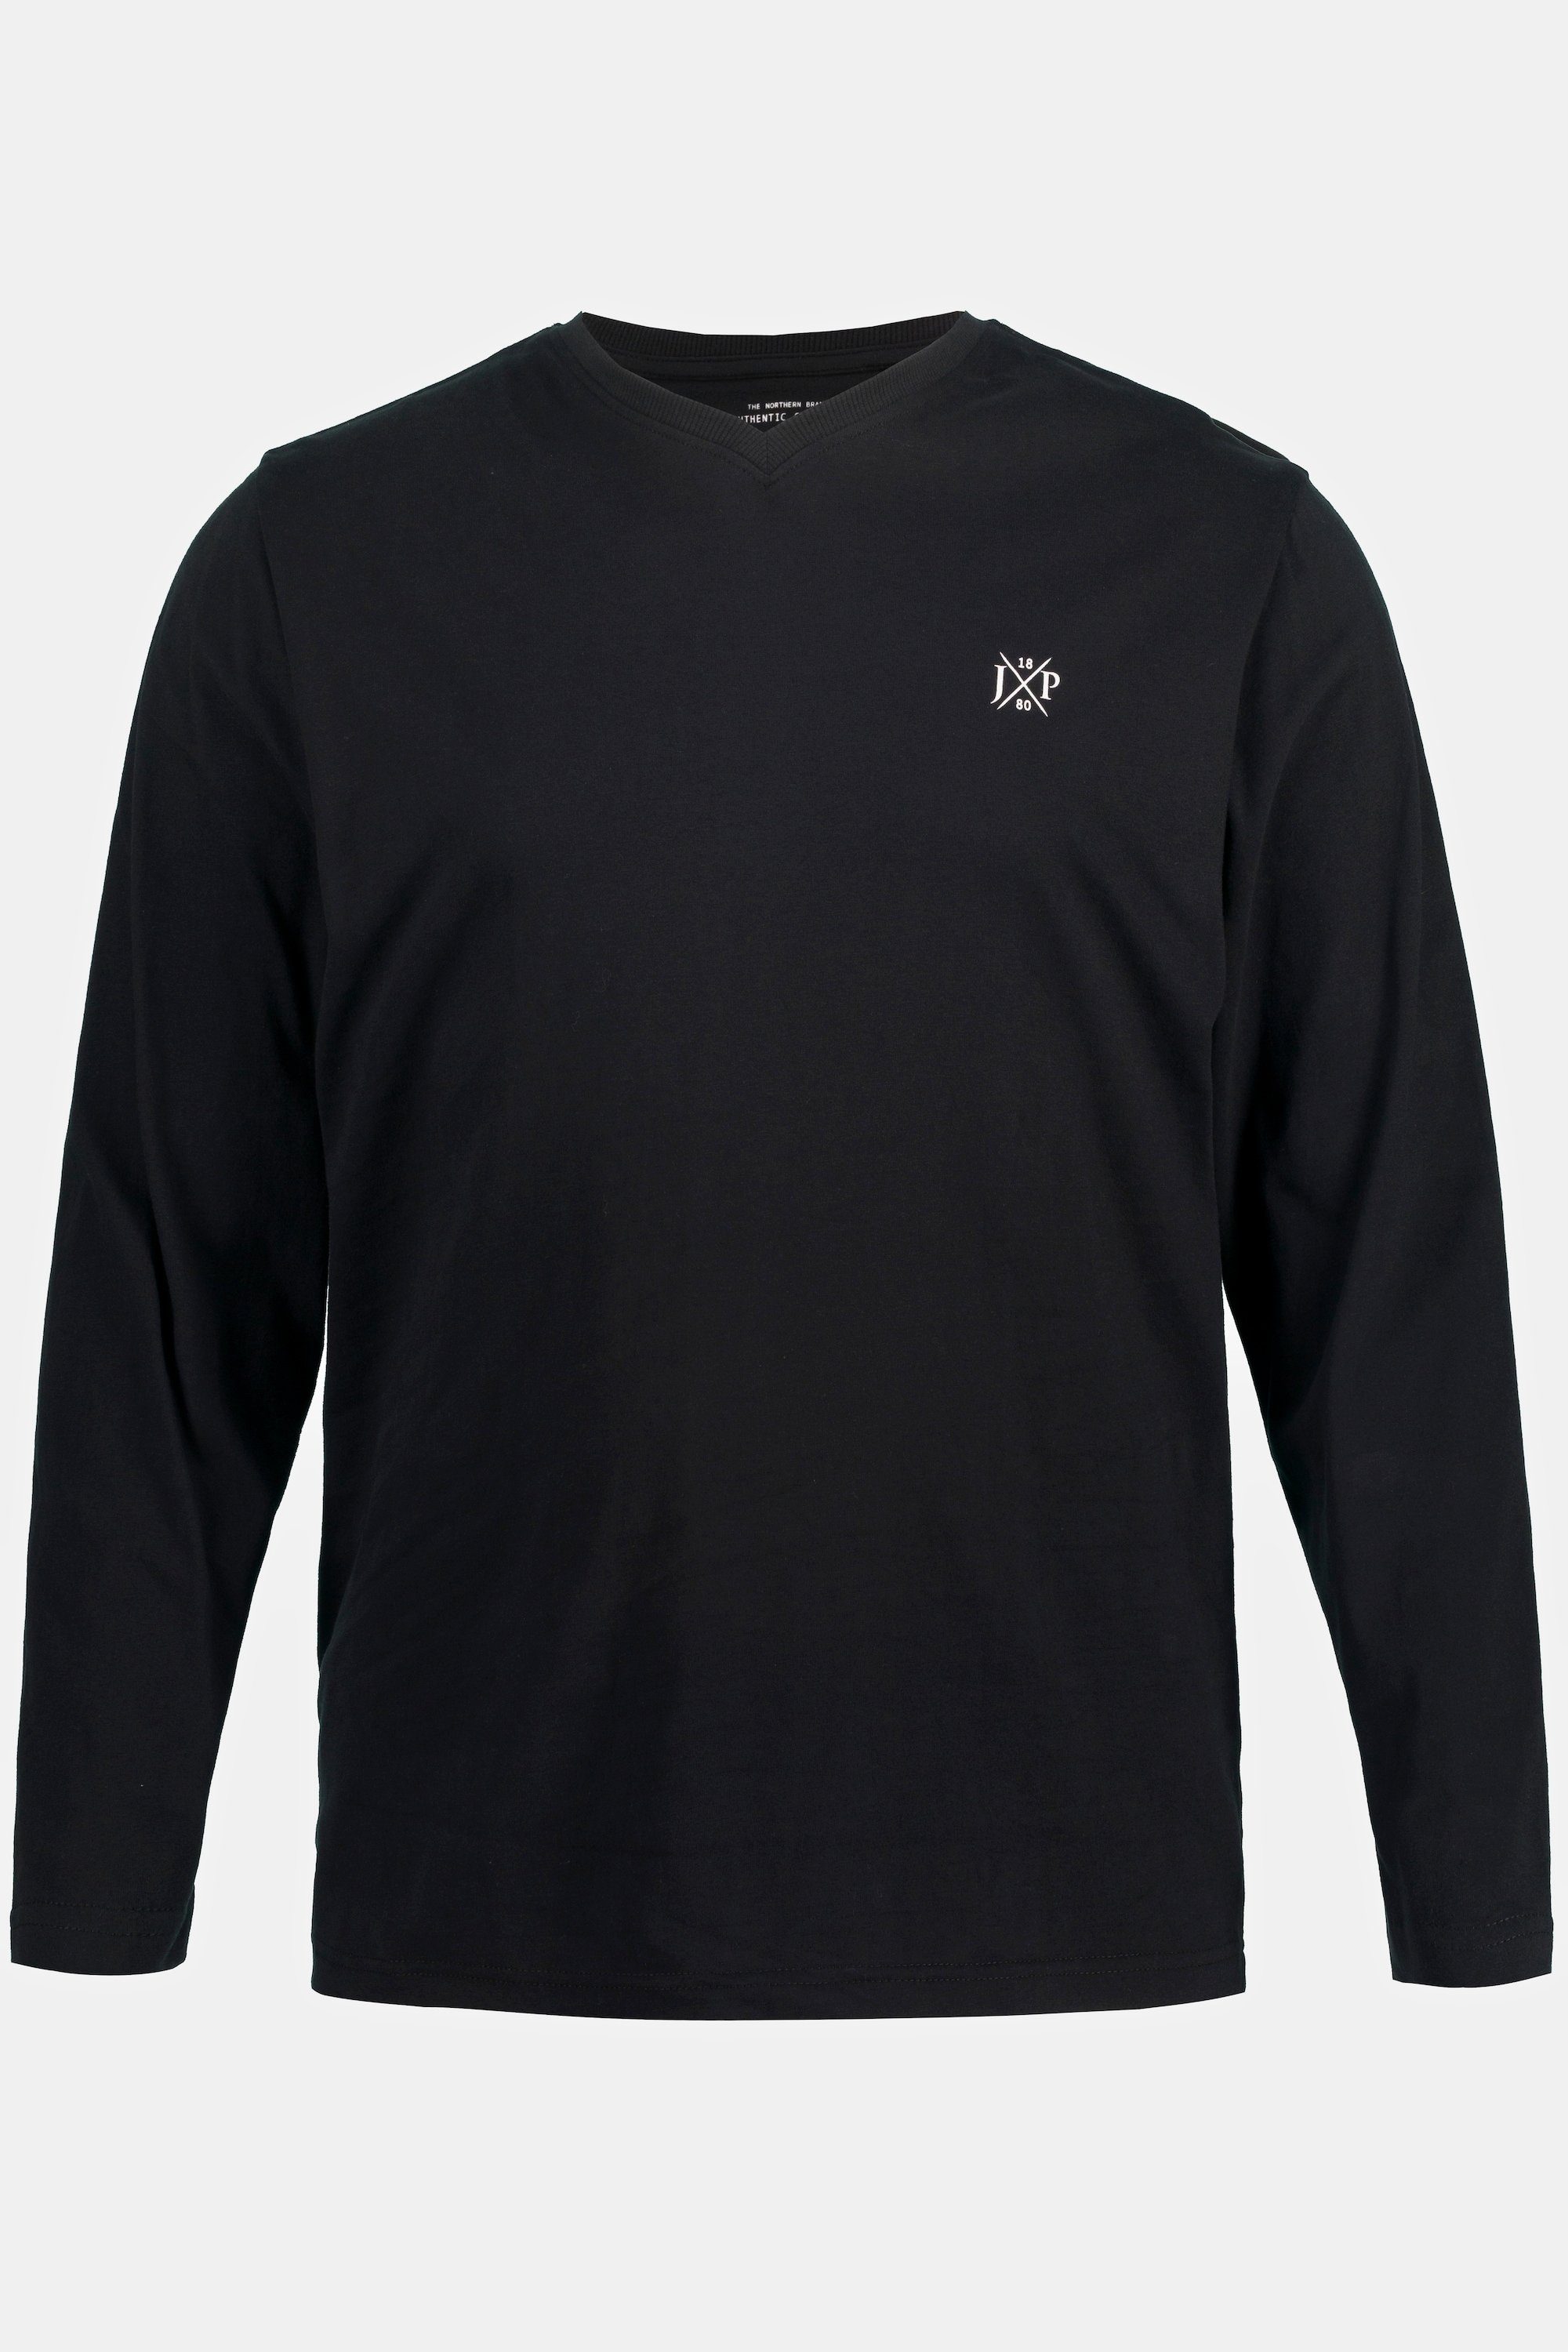 XL V-Ausschnitt Basic Langarmshirt Langarm T-Shirt schwarz JP1880 bis 8